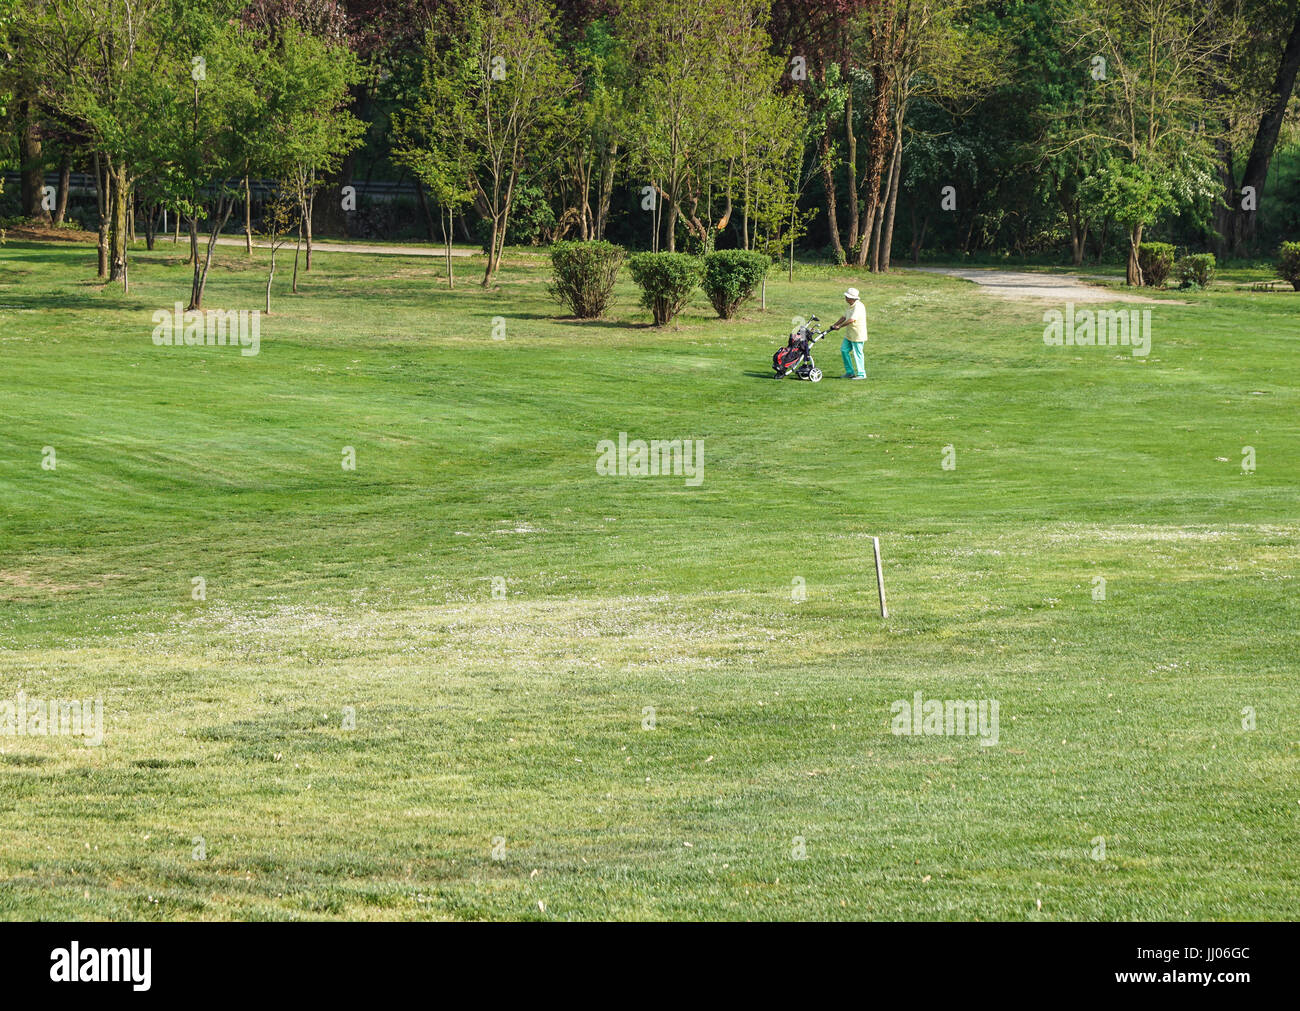 Italia - 25 de mayo : juega al golf, un hombre no identificado. El golf es un deporte generalizado. Foto de stock